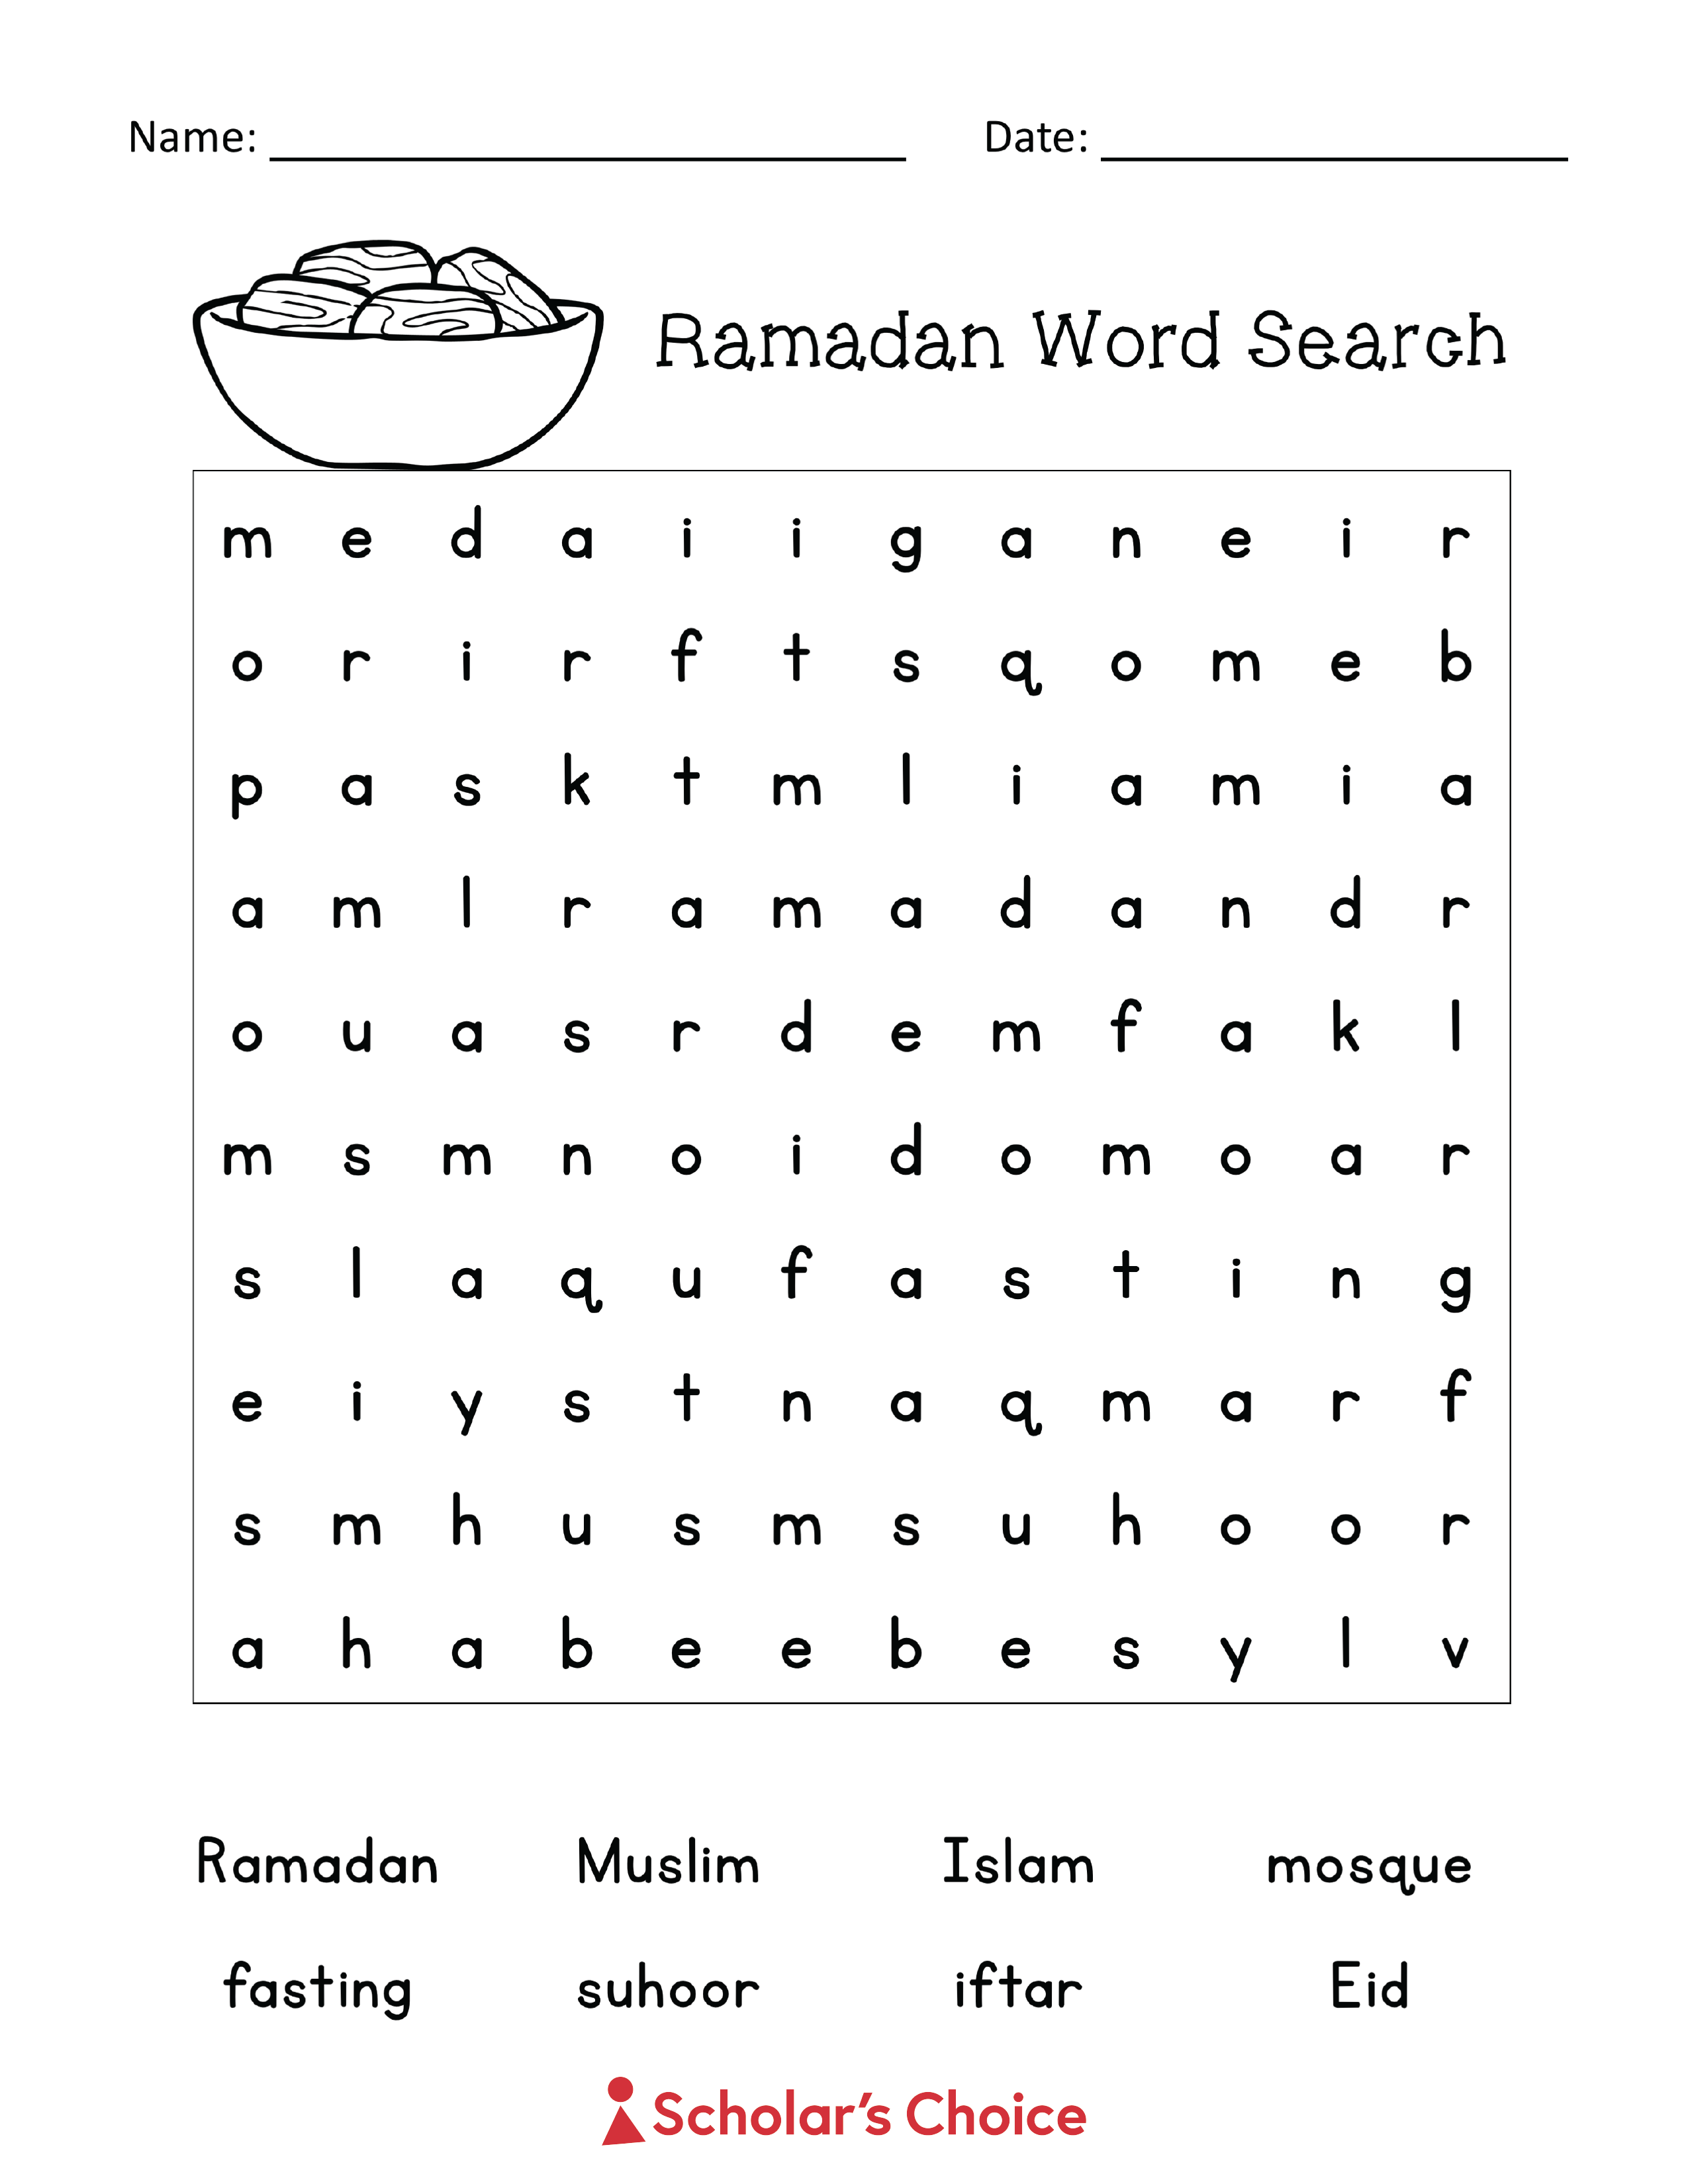 ramadan_word_search